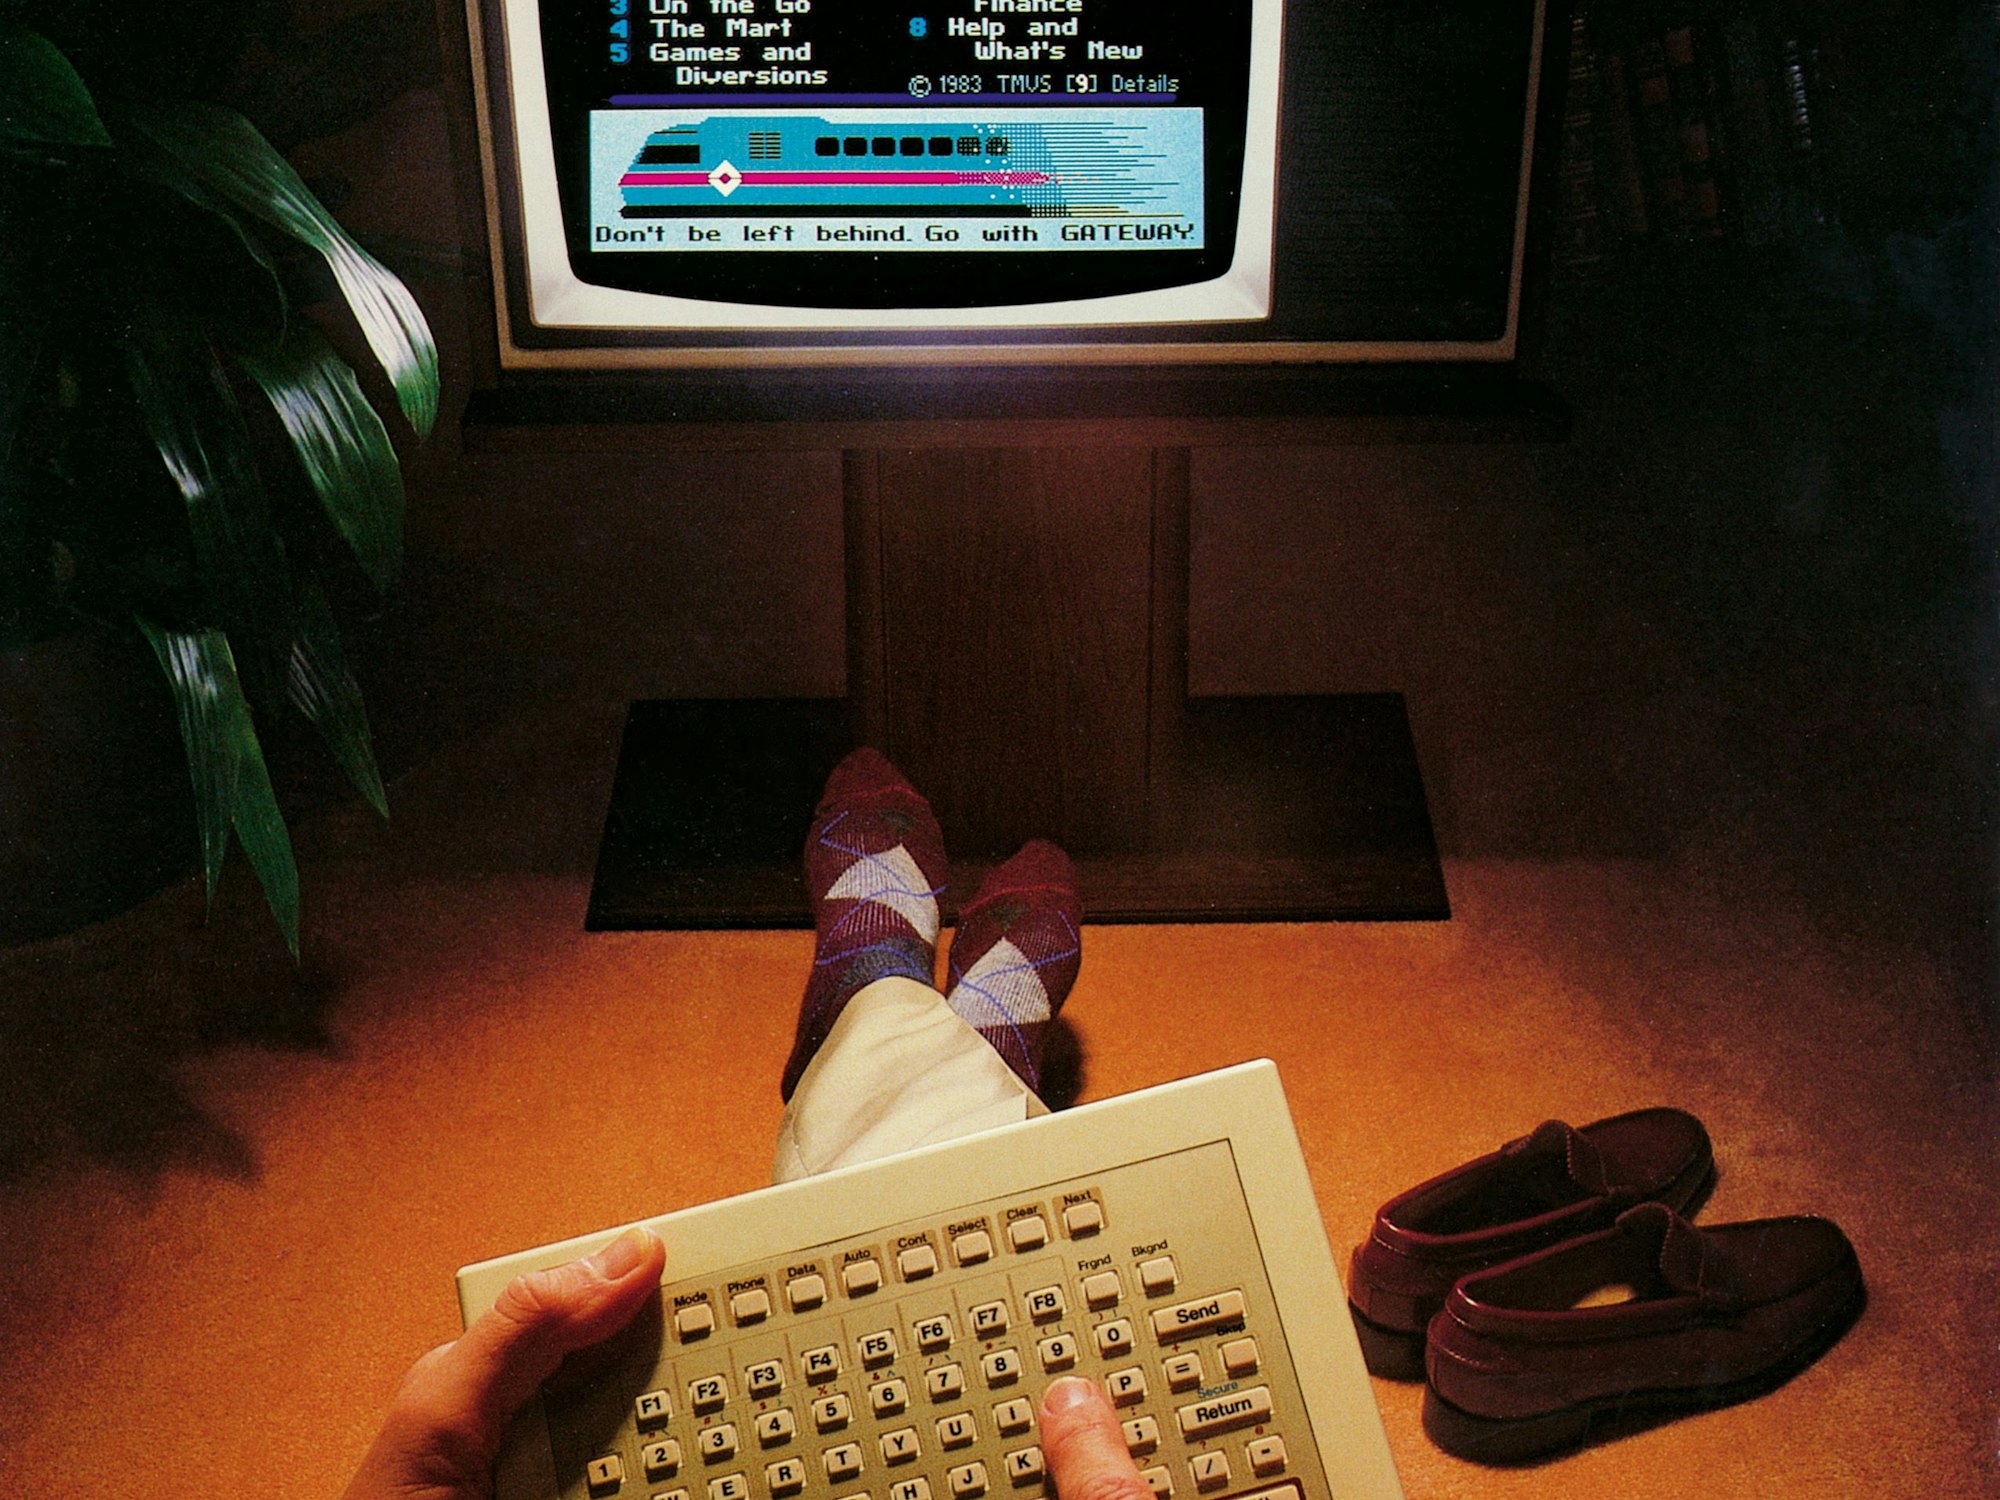 Im Jahr 1983 wurde der Online-Dienst Gateway eingeführt. Bild zur Verfügung gestellt vom Taschen Verlag zum Buch "The Computer"

